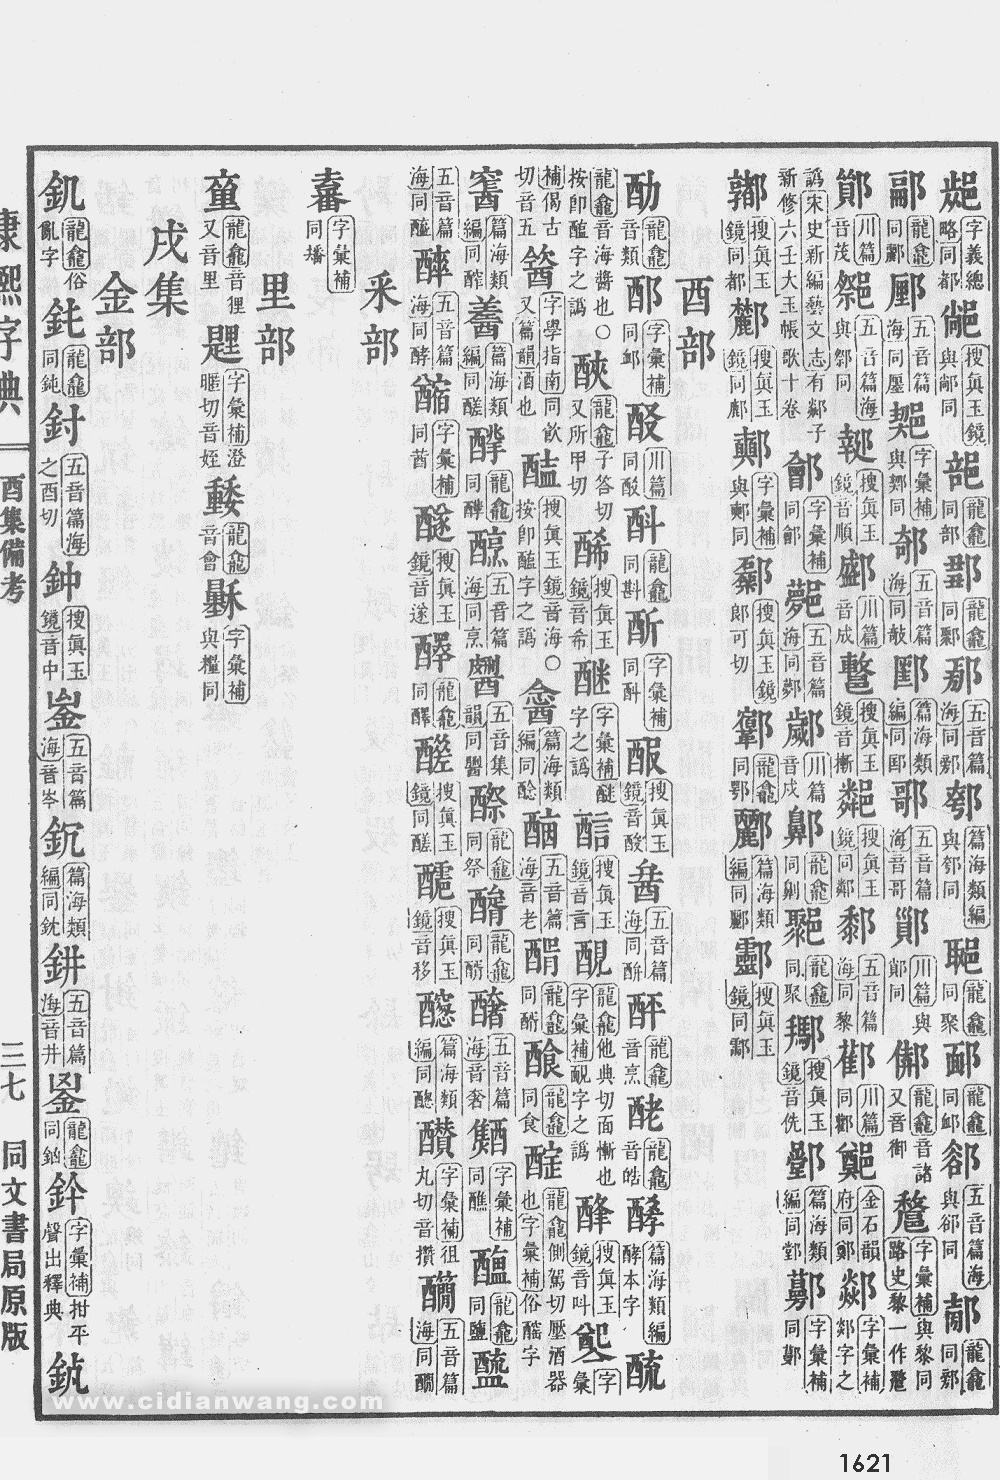 康熙字典掃描版第1621頁